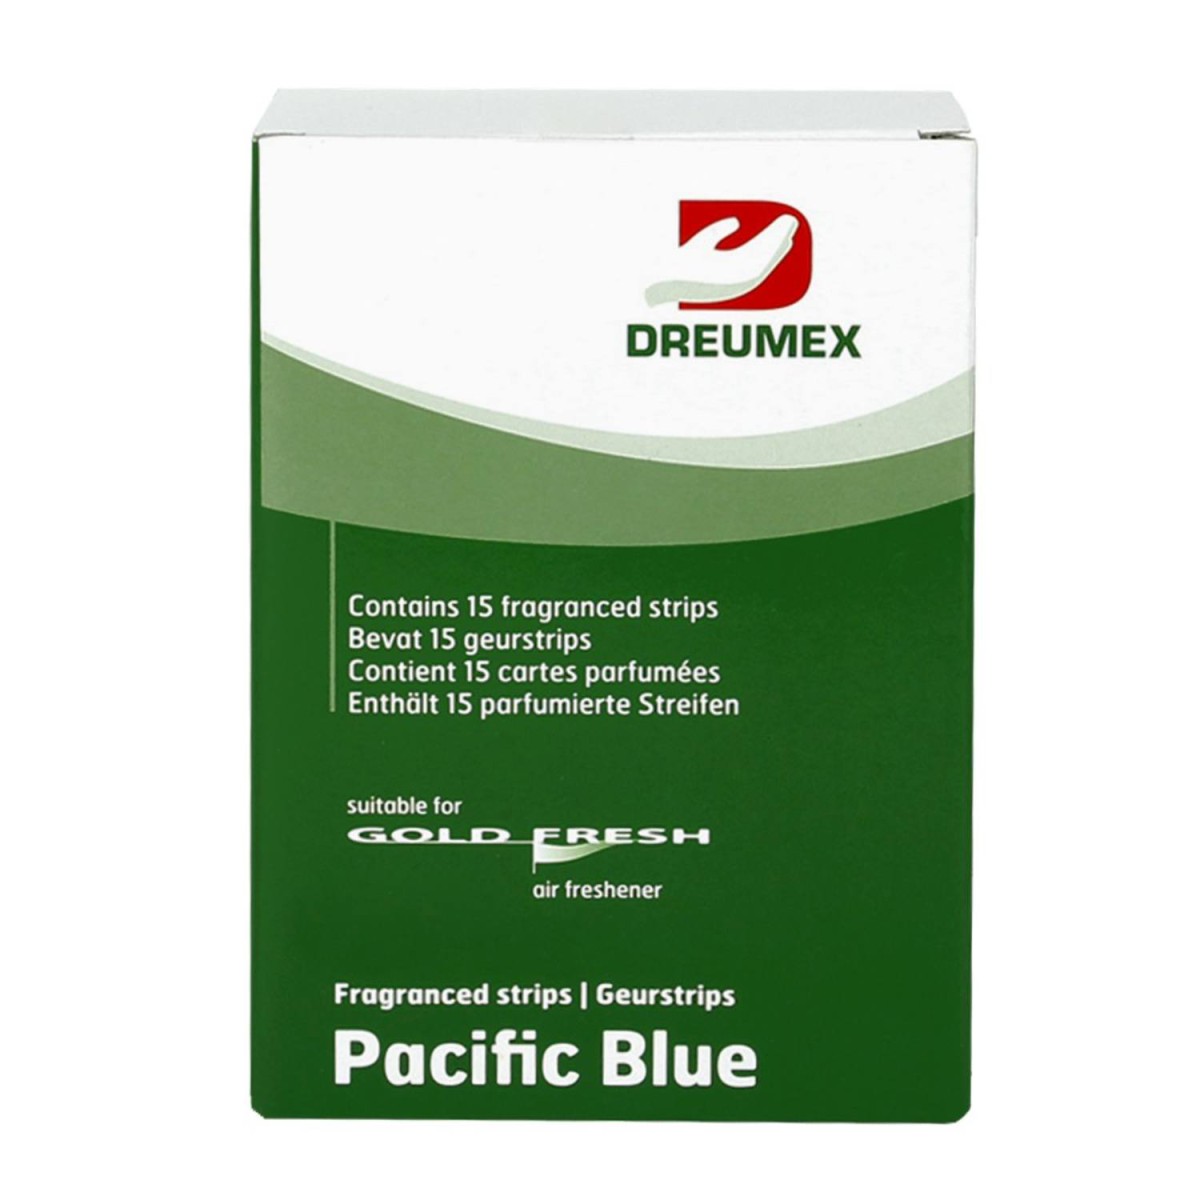 dreumex gold fresh luchtverfrisserstrips pacific blue 15 st